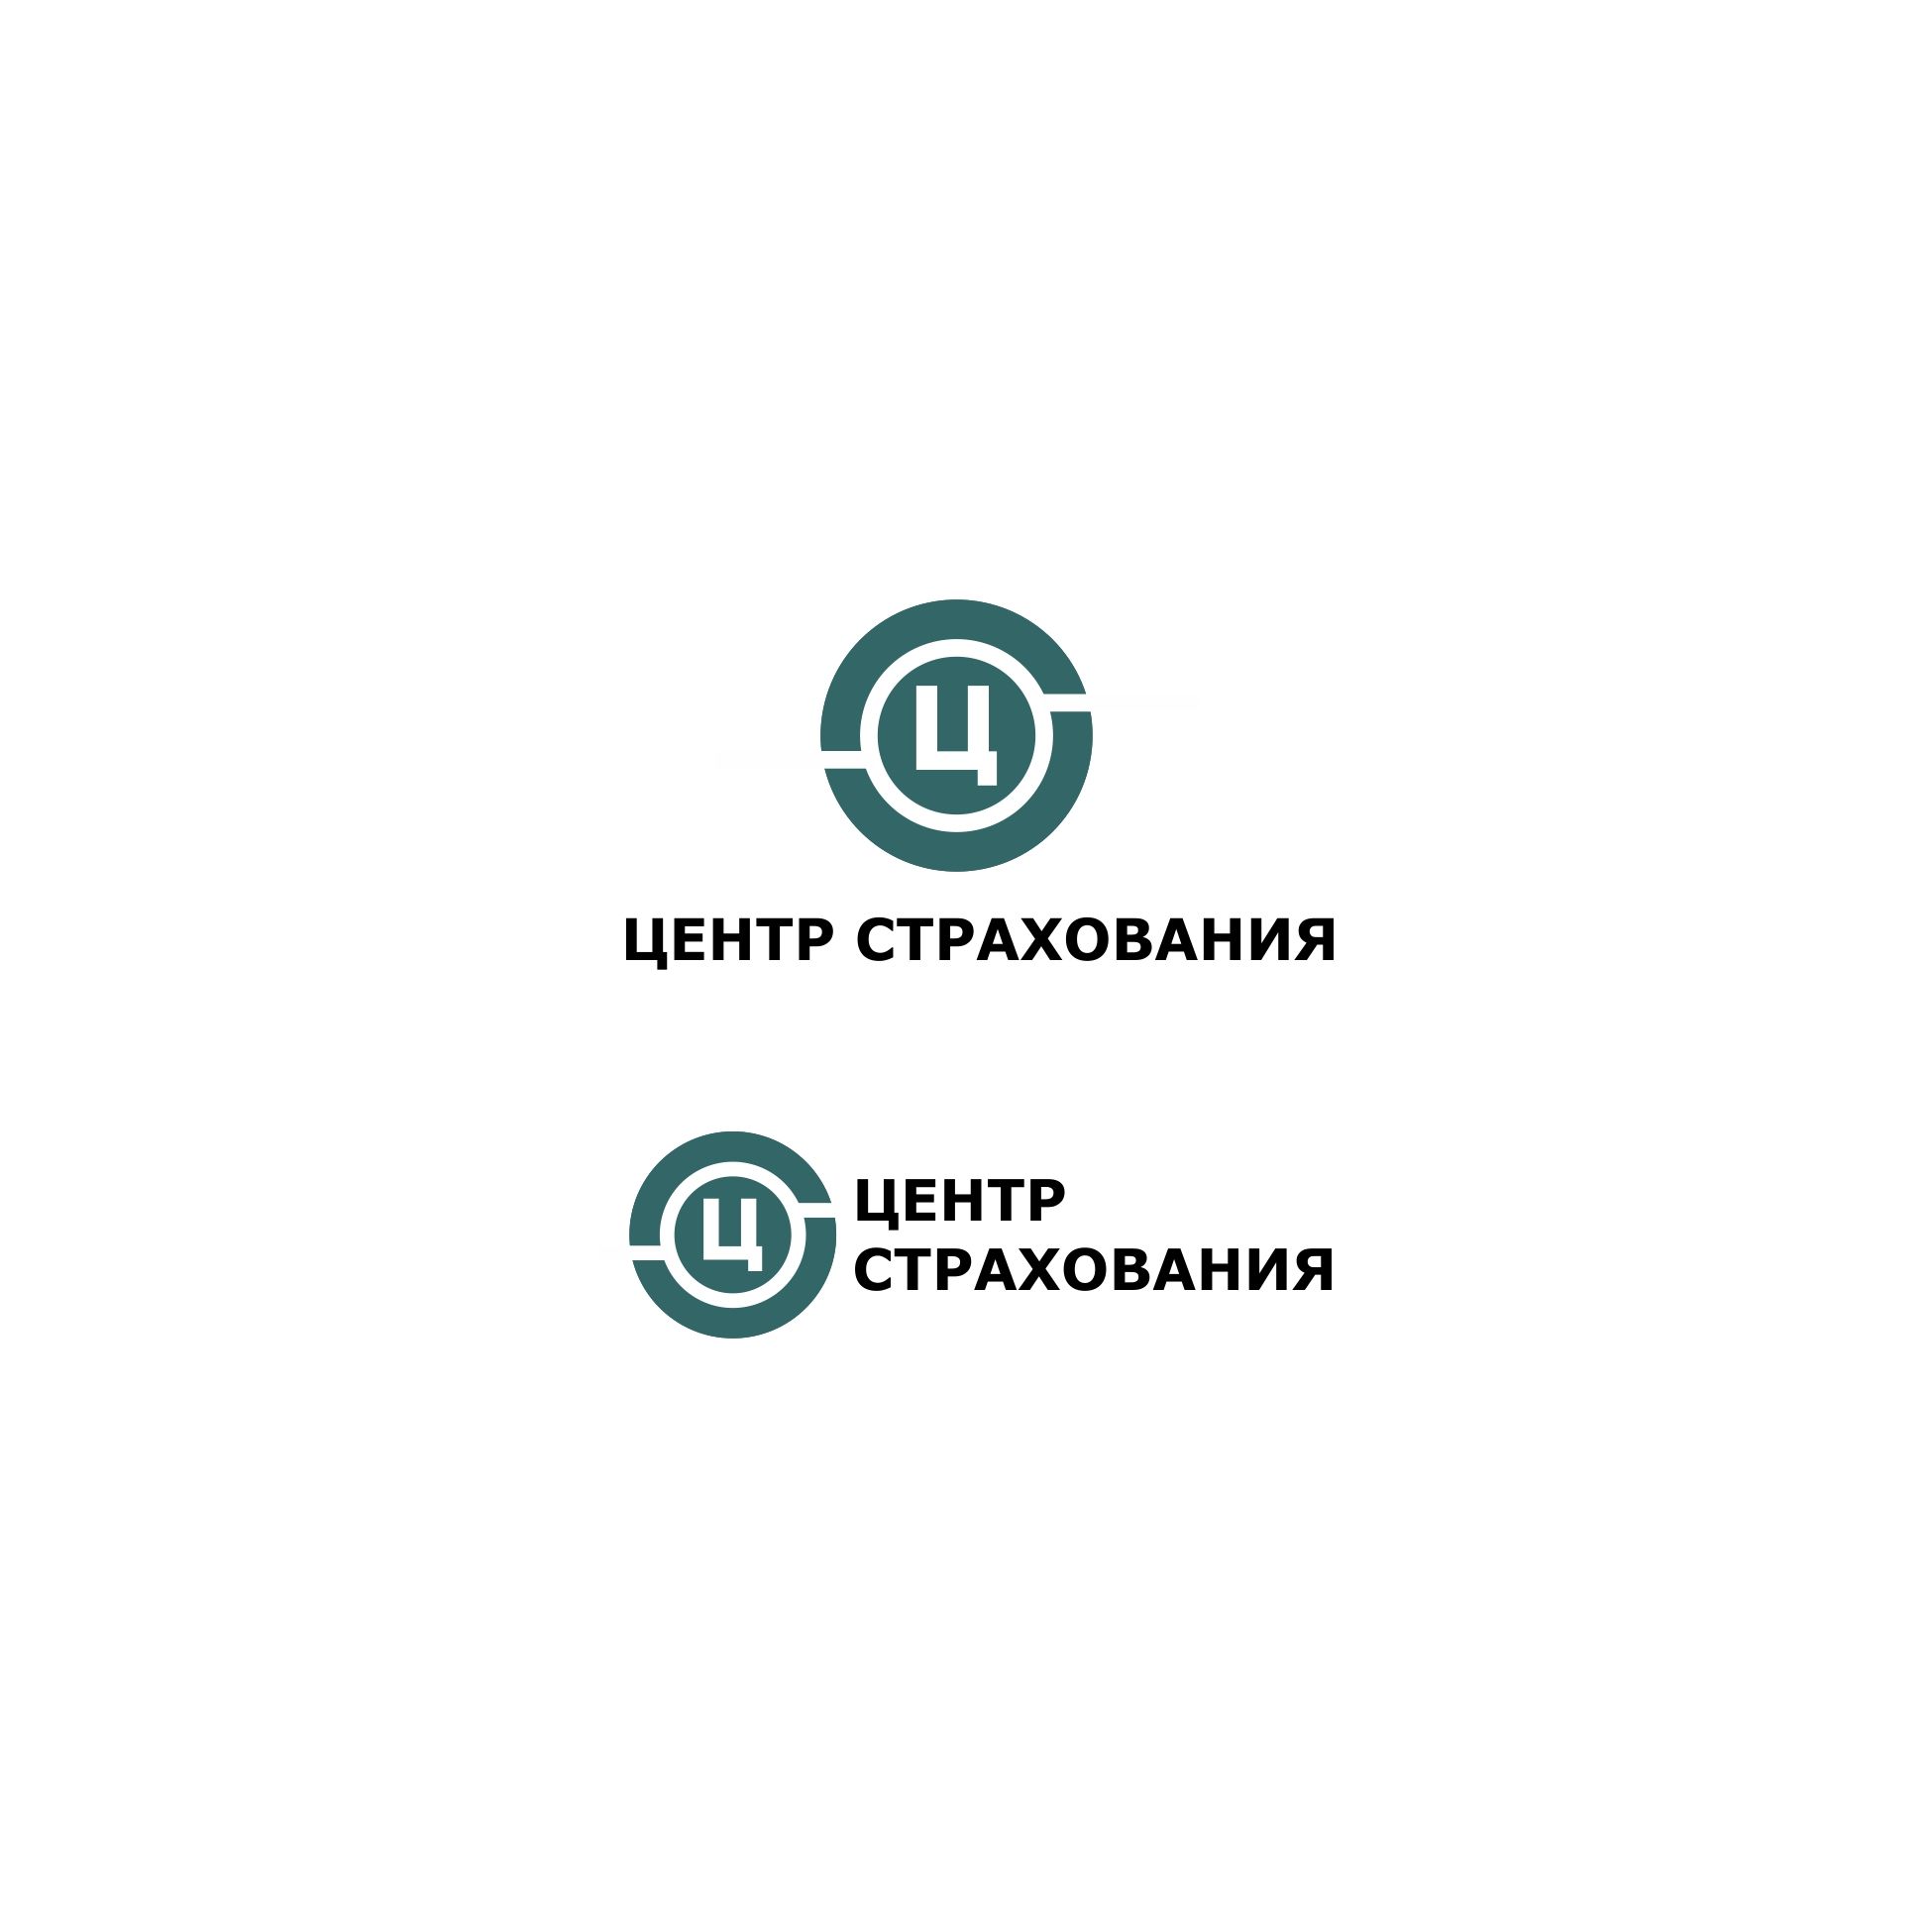 Лого и фирменный стиль для Центр страхования - дизайнер serz4868